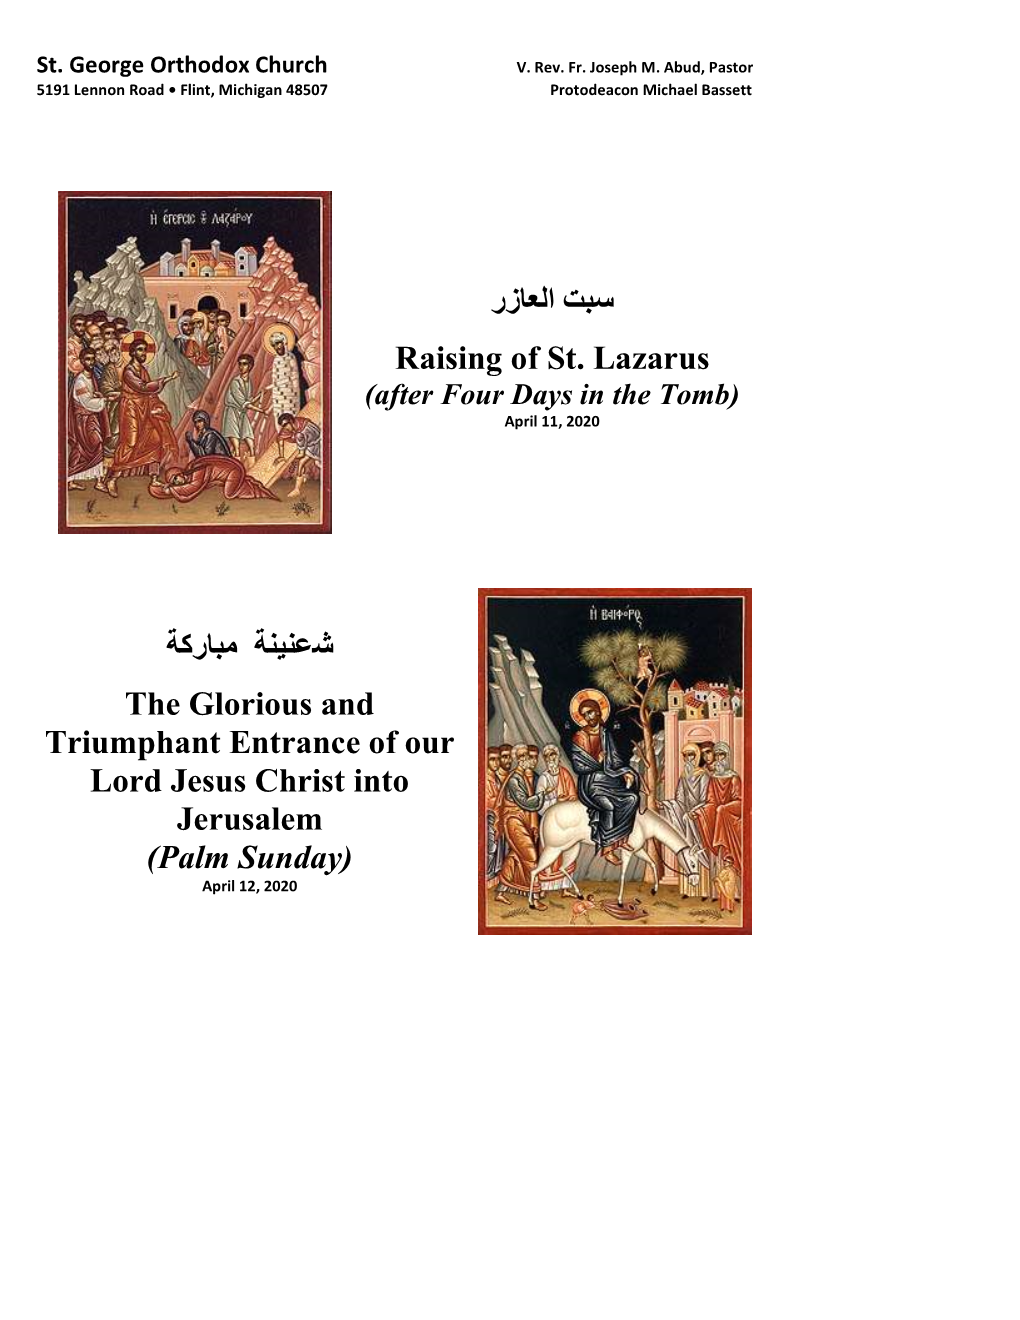 سبت العازر Raising of St. Lazarus ﻤباﺮﻛة شعنينة the Glorious and Triumphant Entrance of Our Lord Jesus C